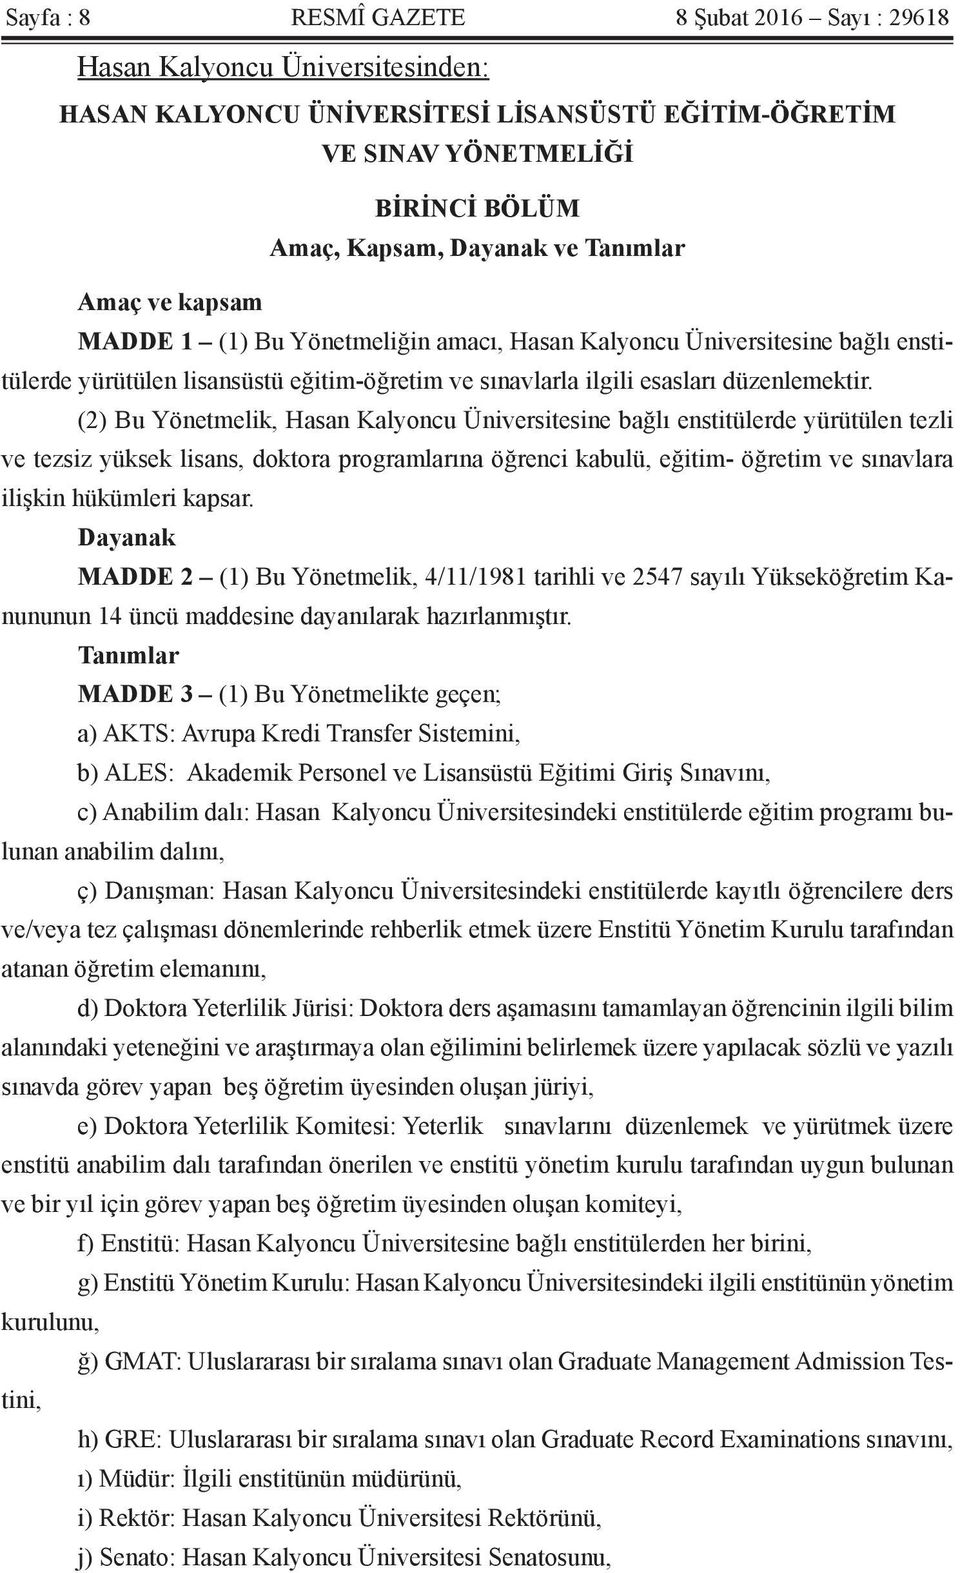 (2) Bu Yönetmelik, Hasan Kalyoncu Üniversitesine bağlı enstitülerde yürütülen tezli ve tezsiz yüksek lisans, doktora programlarına öğrenci kabulü, eğitim- öğretim ve sınavlara ilişkin hükümleri